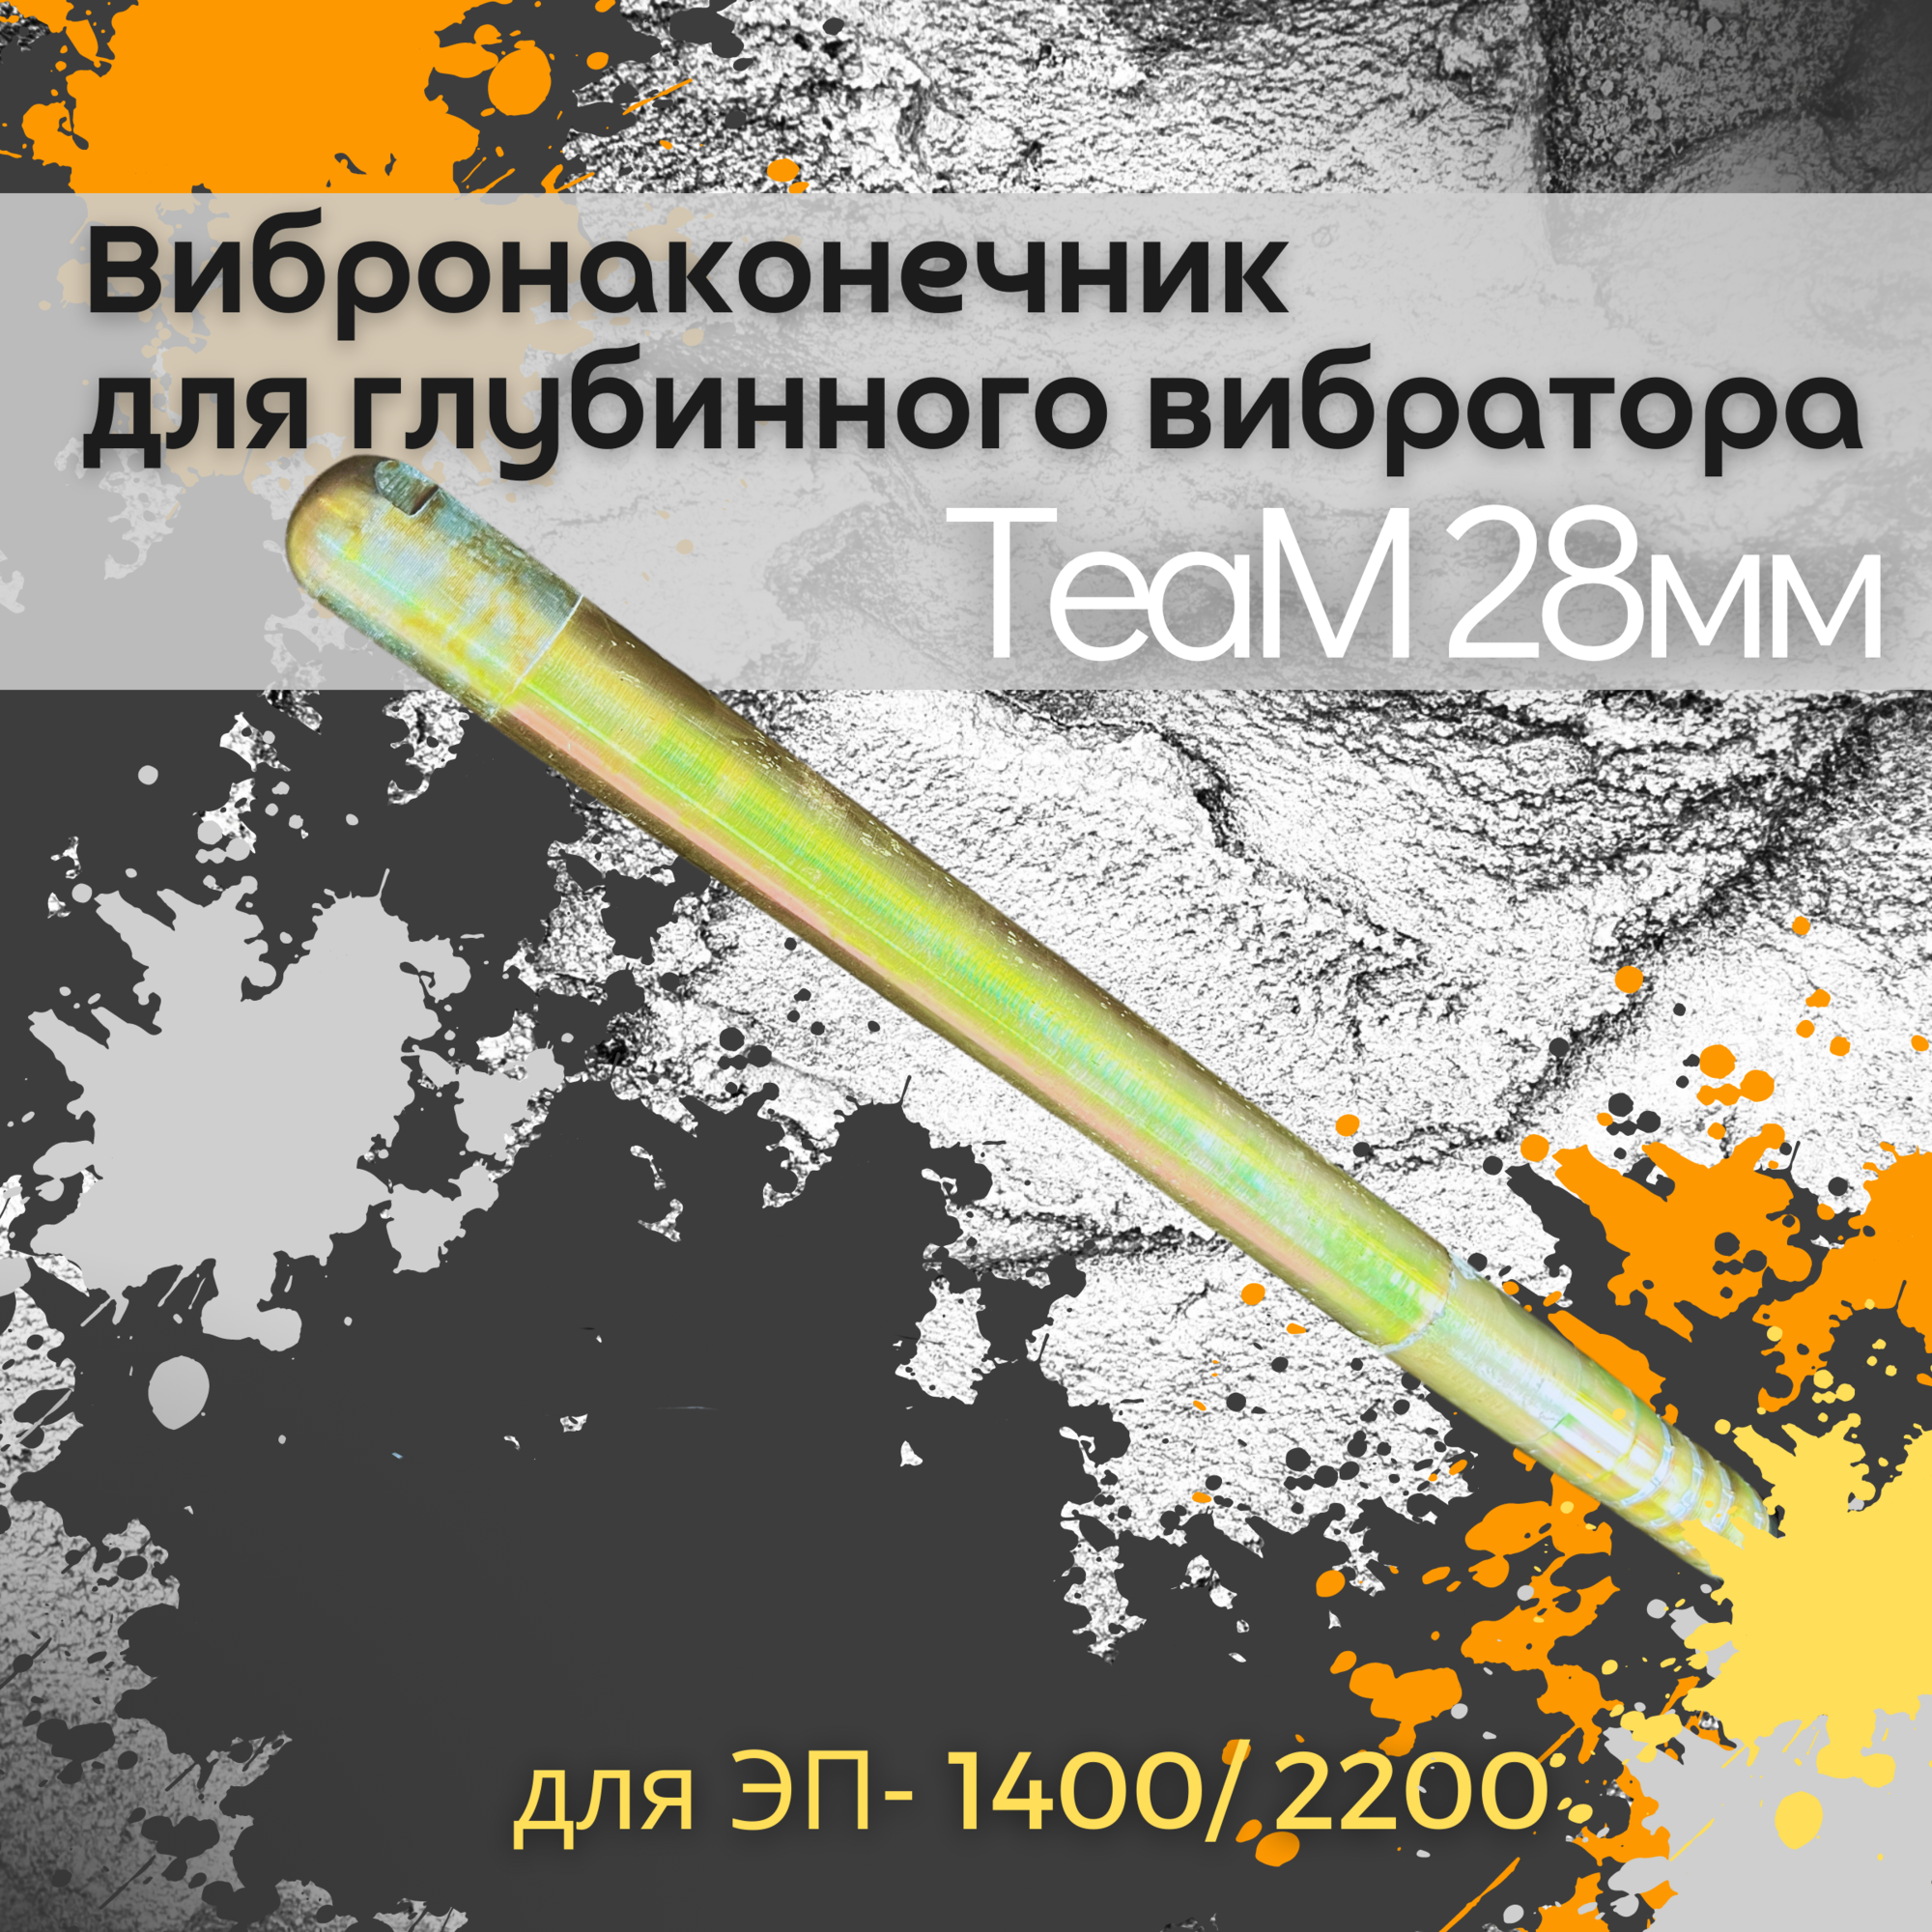 Вибронаконечник TeaM 28 мм для ЭП-1400/2200